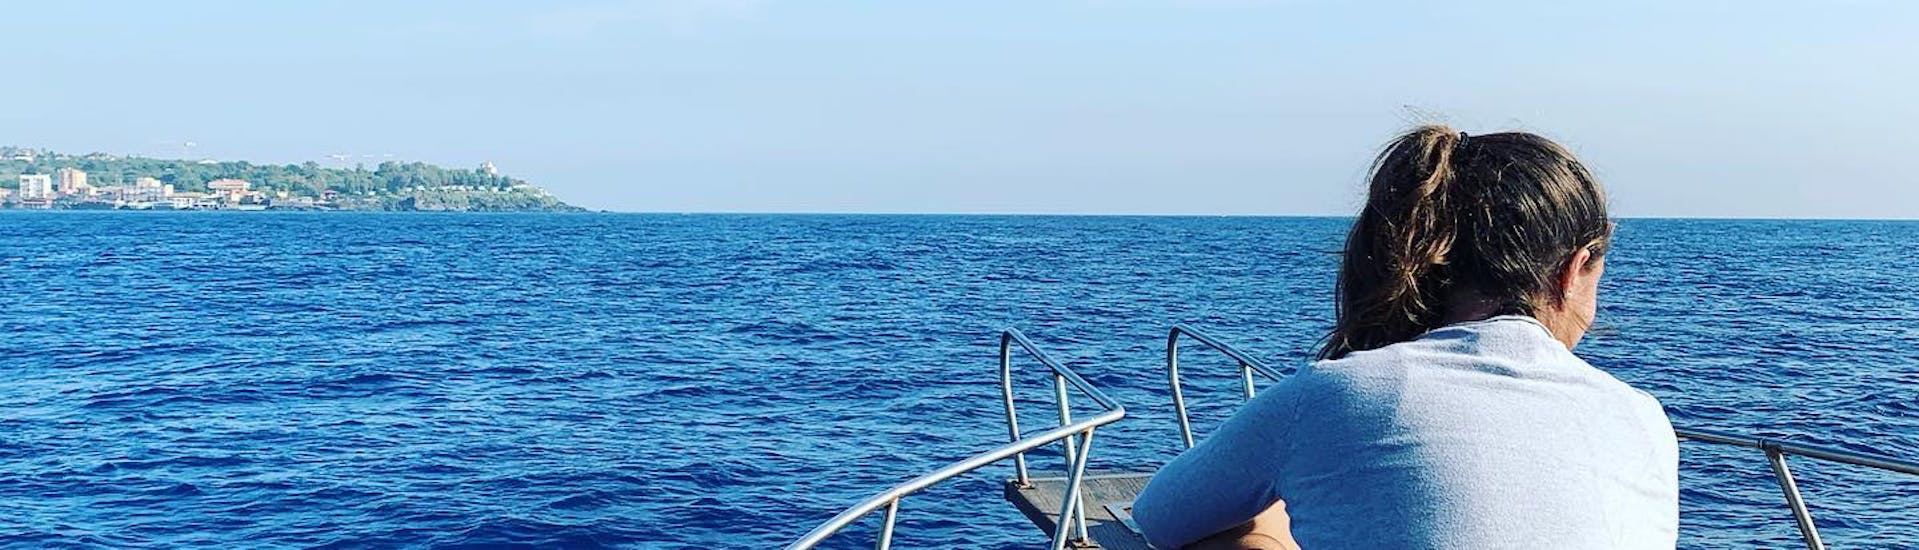 Meisje zittend op de boot van Etna & Sea Excursions Catania kijkend naar de zee tijdens de boottocht in het beschermde gebied van de Cyclops-eilanden met snorkelen.